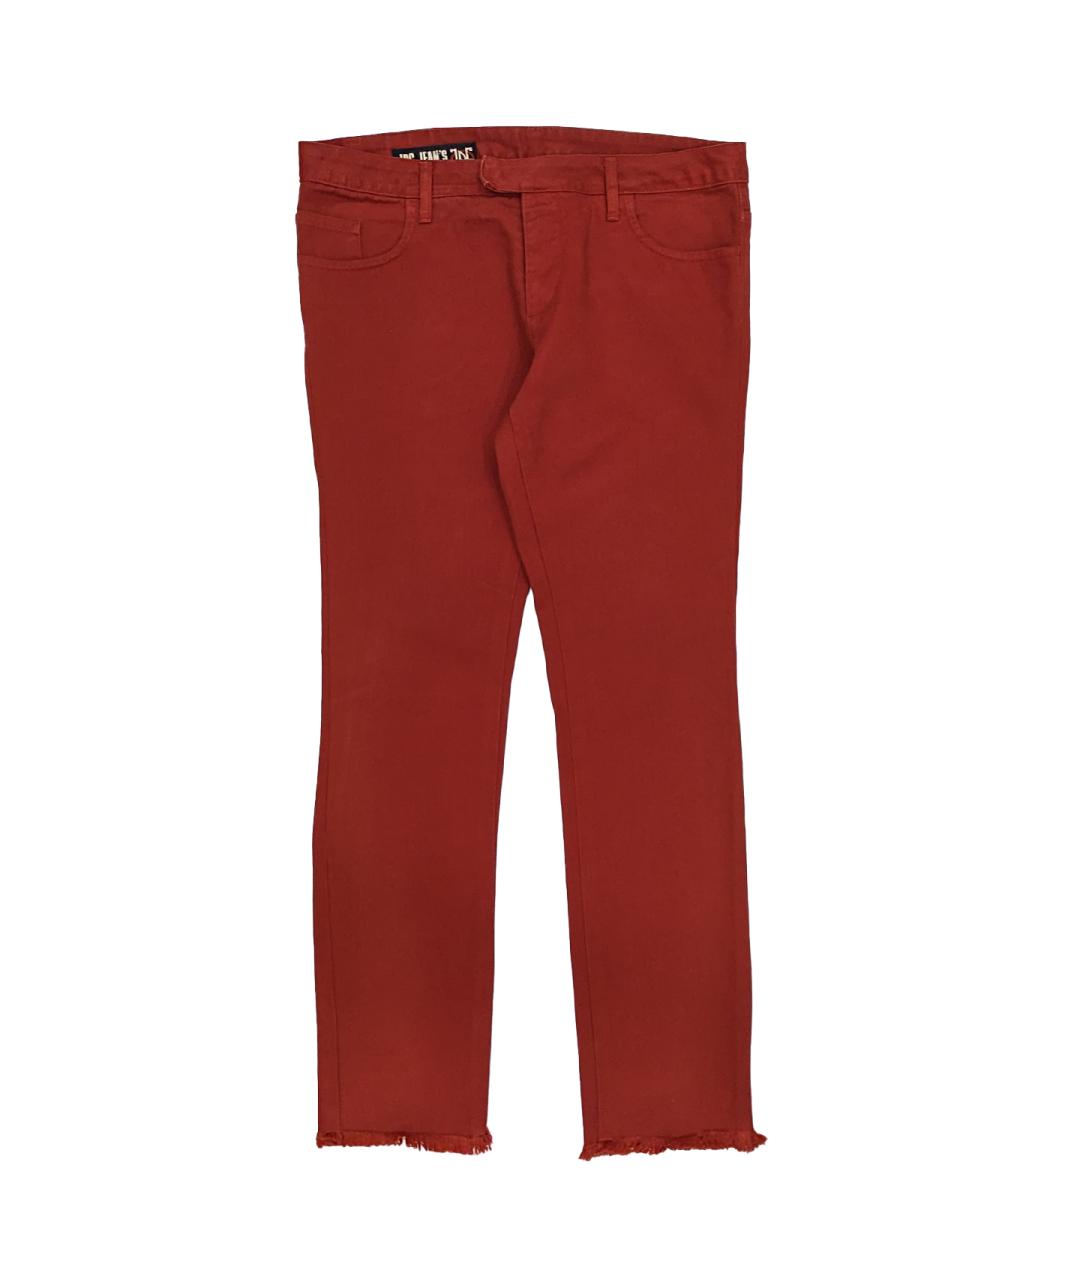 JEAN PAUL GAULTIER Красные хлопковые джинсы слим, фото 1